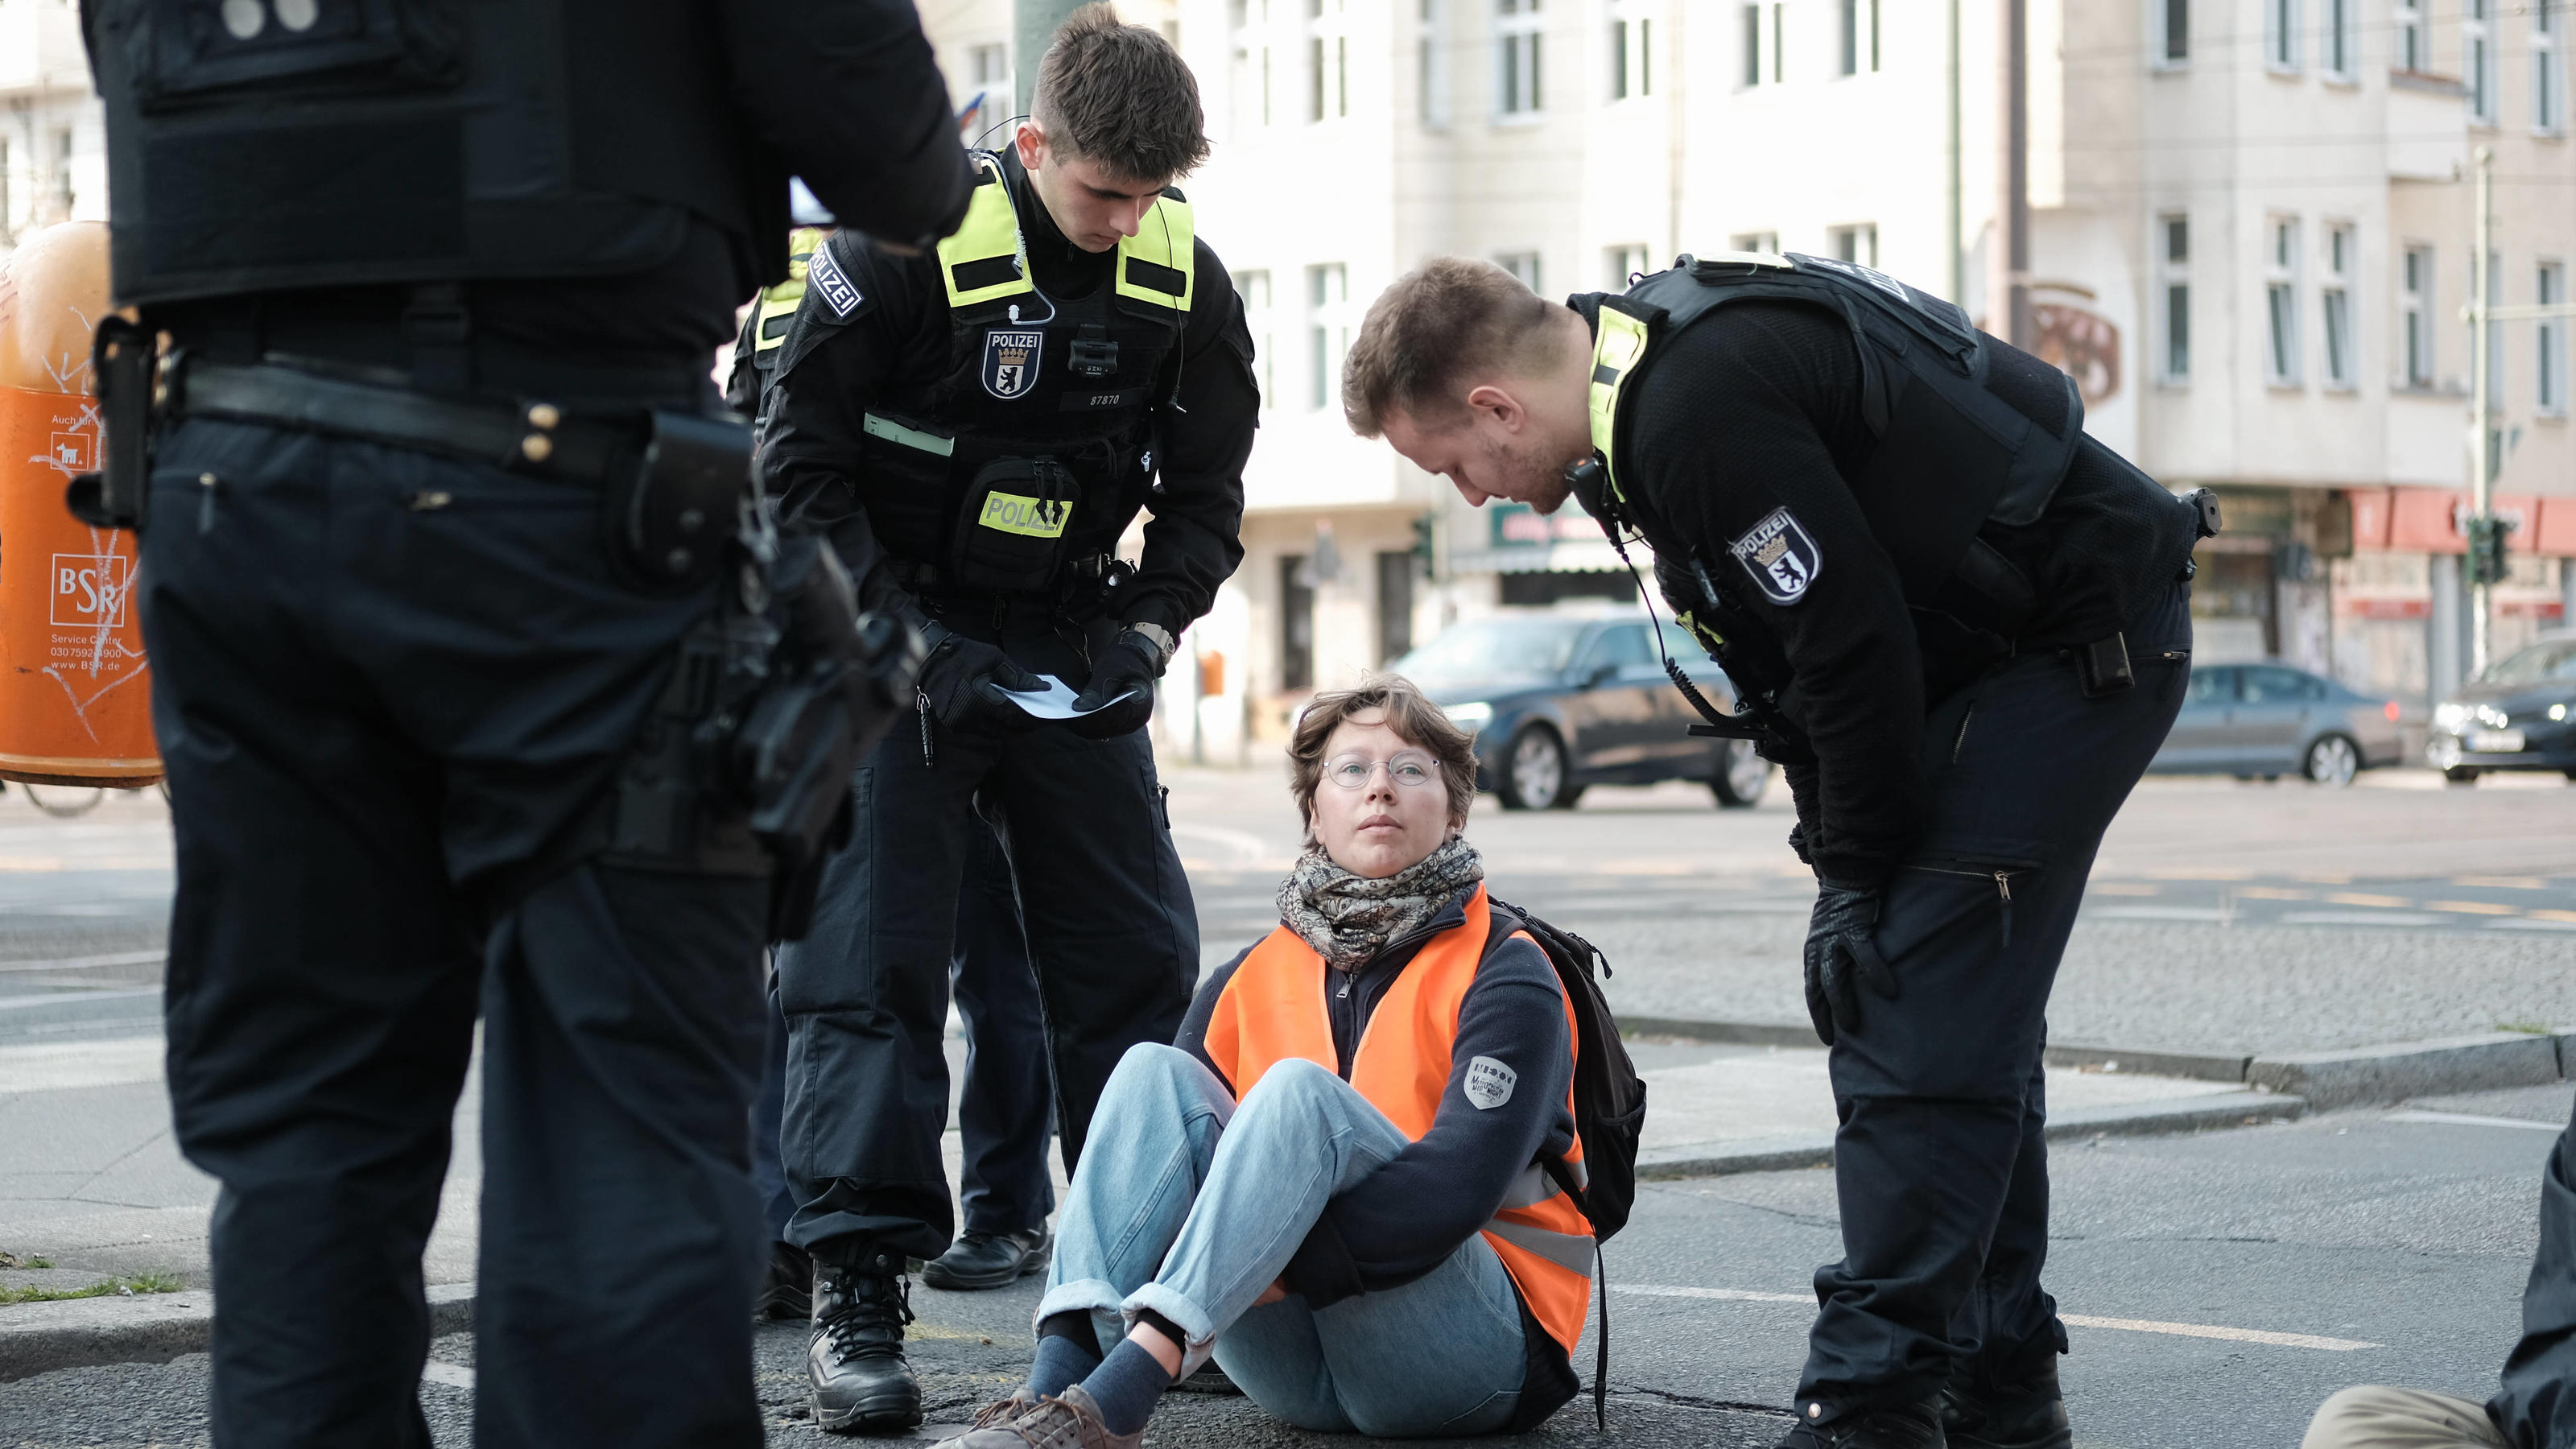 Letzte Generation blockiert Greifswalder Str. in Berlin Am 02.05.2023 blockierten 5 Aktivisten der sog. Letzten Generation die Greifswalder Str. an der Kreuzung Danziger Str. gegen 8 Uhr. Sie protestieren fÃ¼r ein 9Ã¢-Ticket, ein Tempolimit und fÃ¼r 